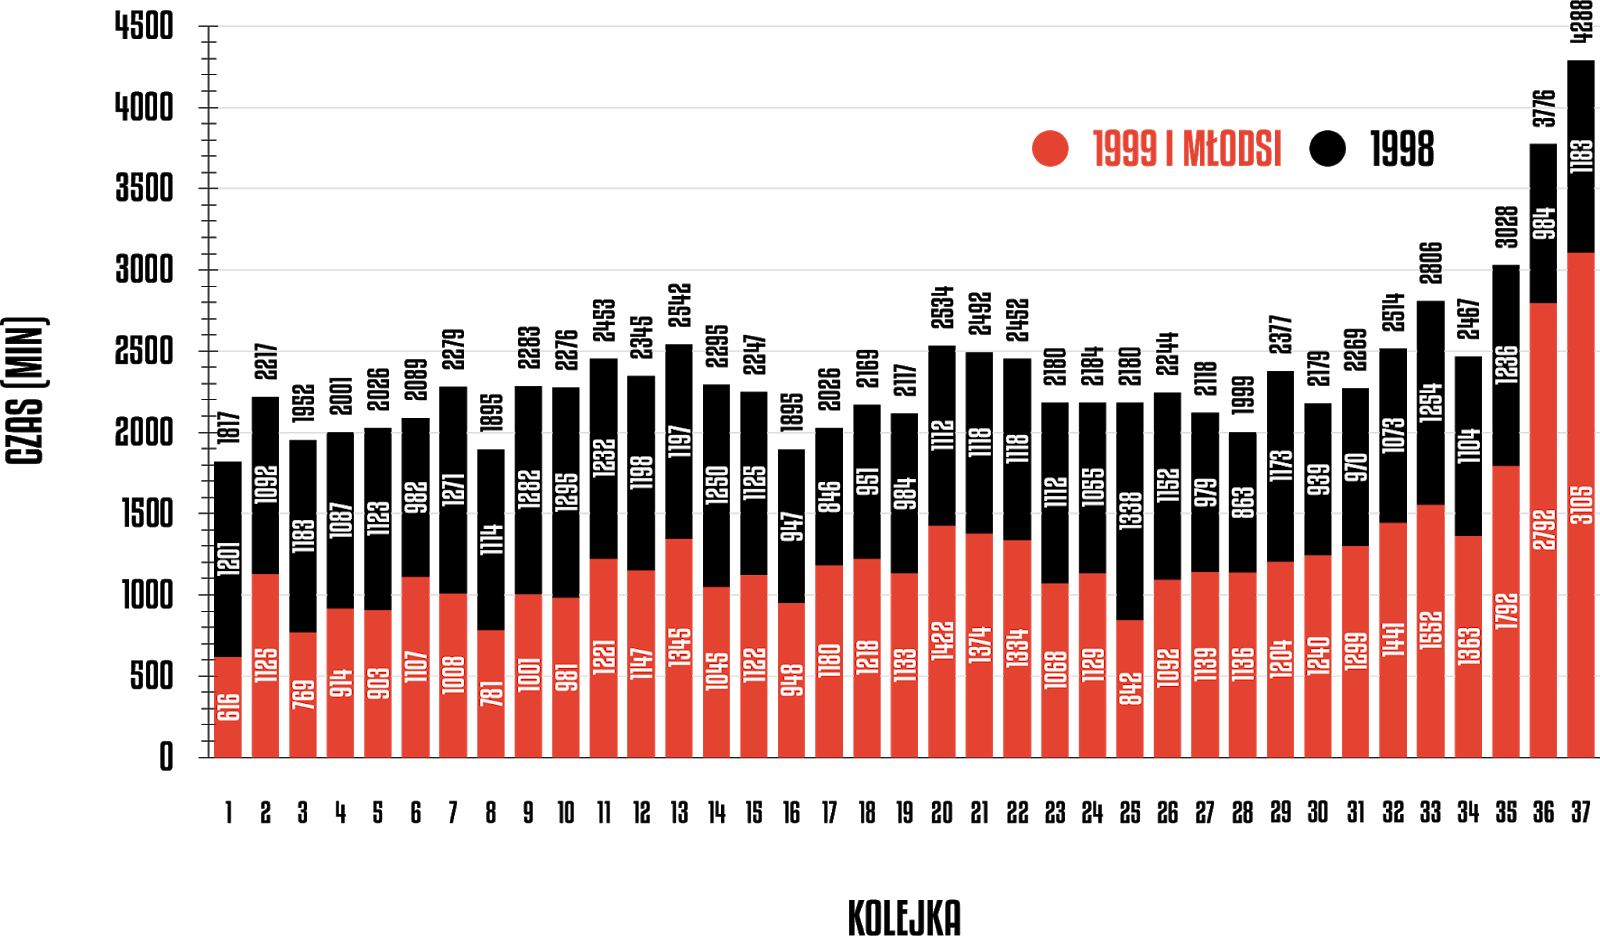 Rozegrany czas przez młodzieżowców w poszczególnych kolejkach PKO Ekstraklasy 2019/20<br><br>Źródło: Opracowanie własne na podstawie ekstrastats.pl<br><br>graf. Bartosz Urban